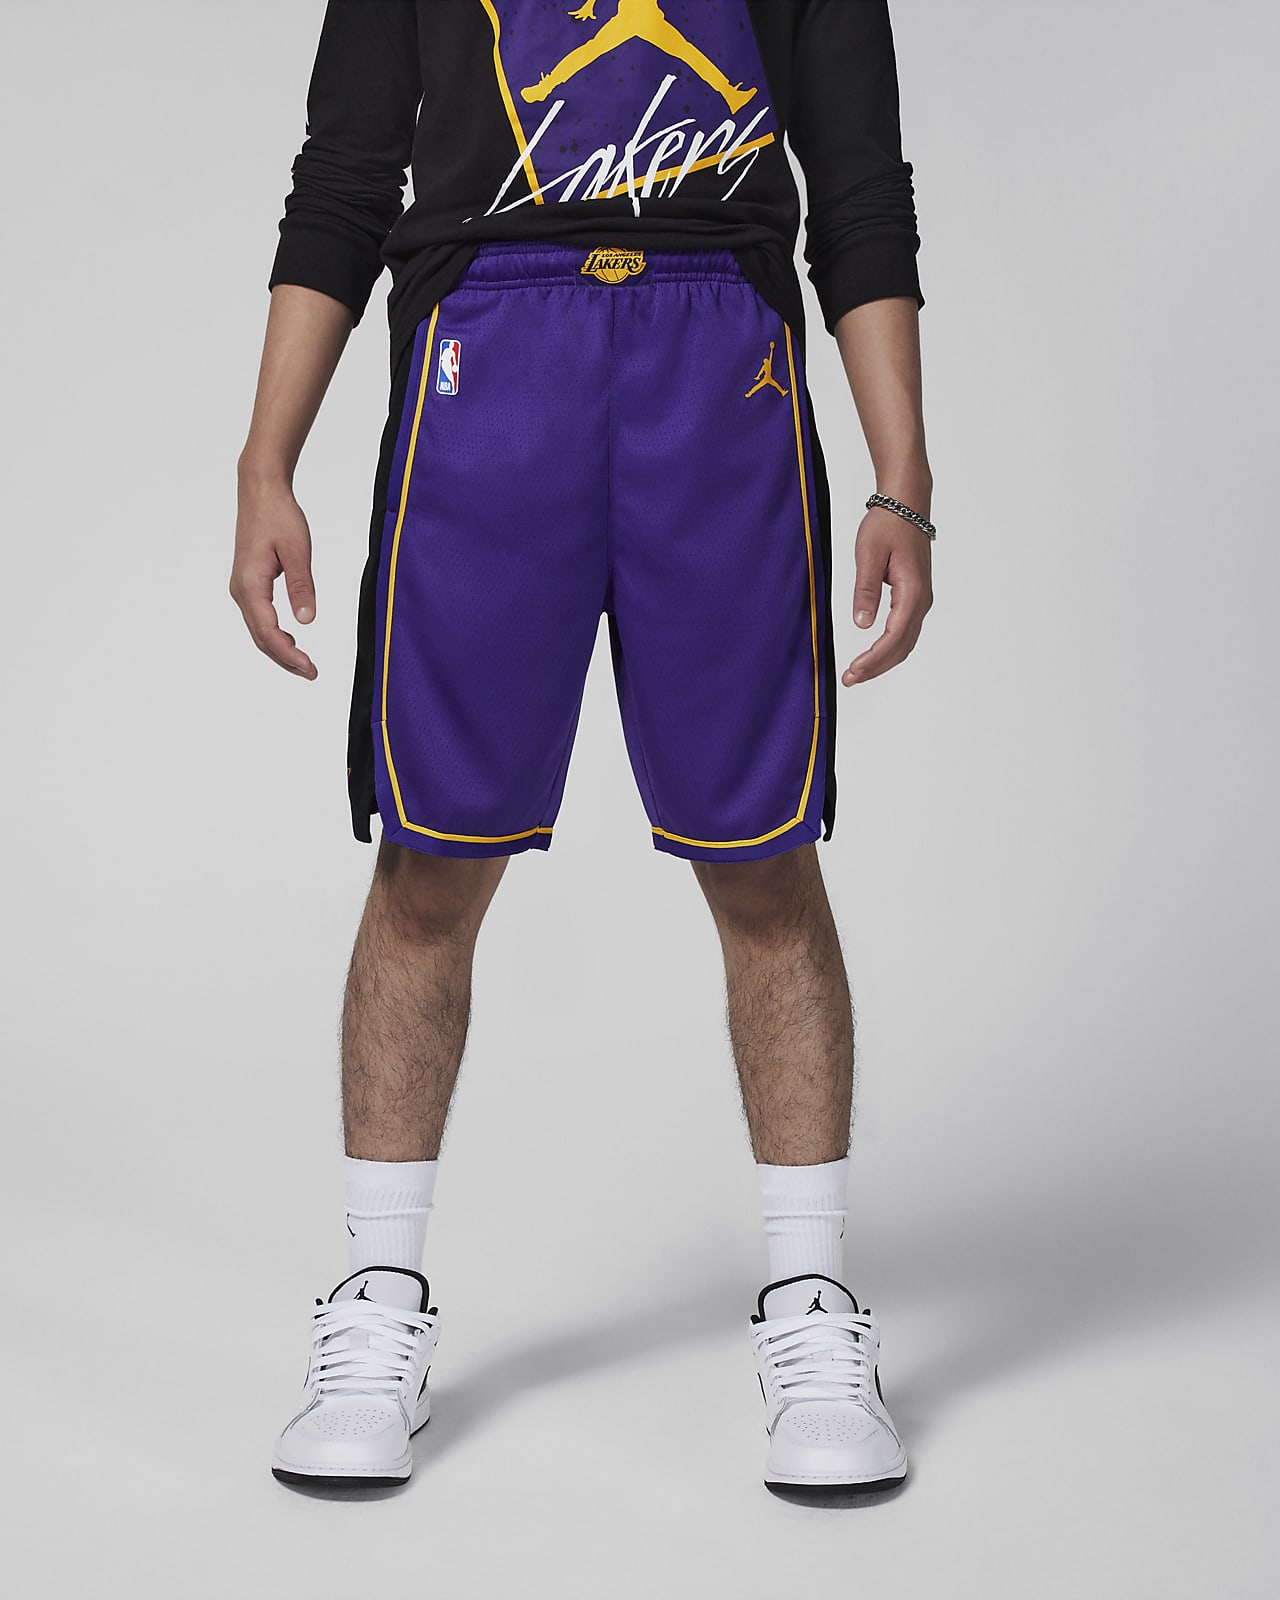 Los Angeles Lakers Statement Edition Swingman Jordan NBA-basketbalshorts voor kids